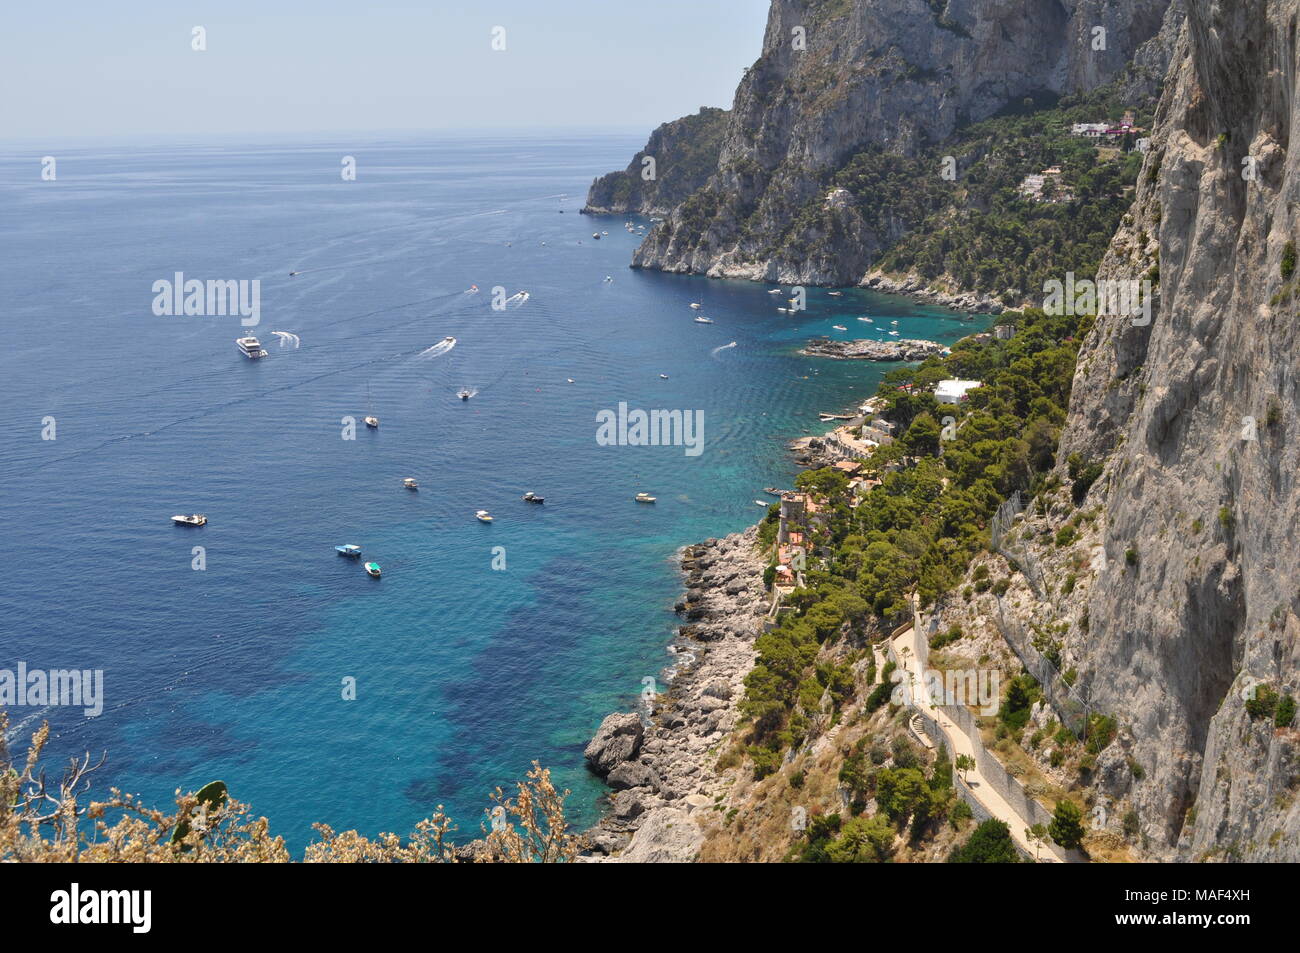 Bay, les falaises et l'eau bleu turquoise de l'île de Capri, Italie Banque D'Images